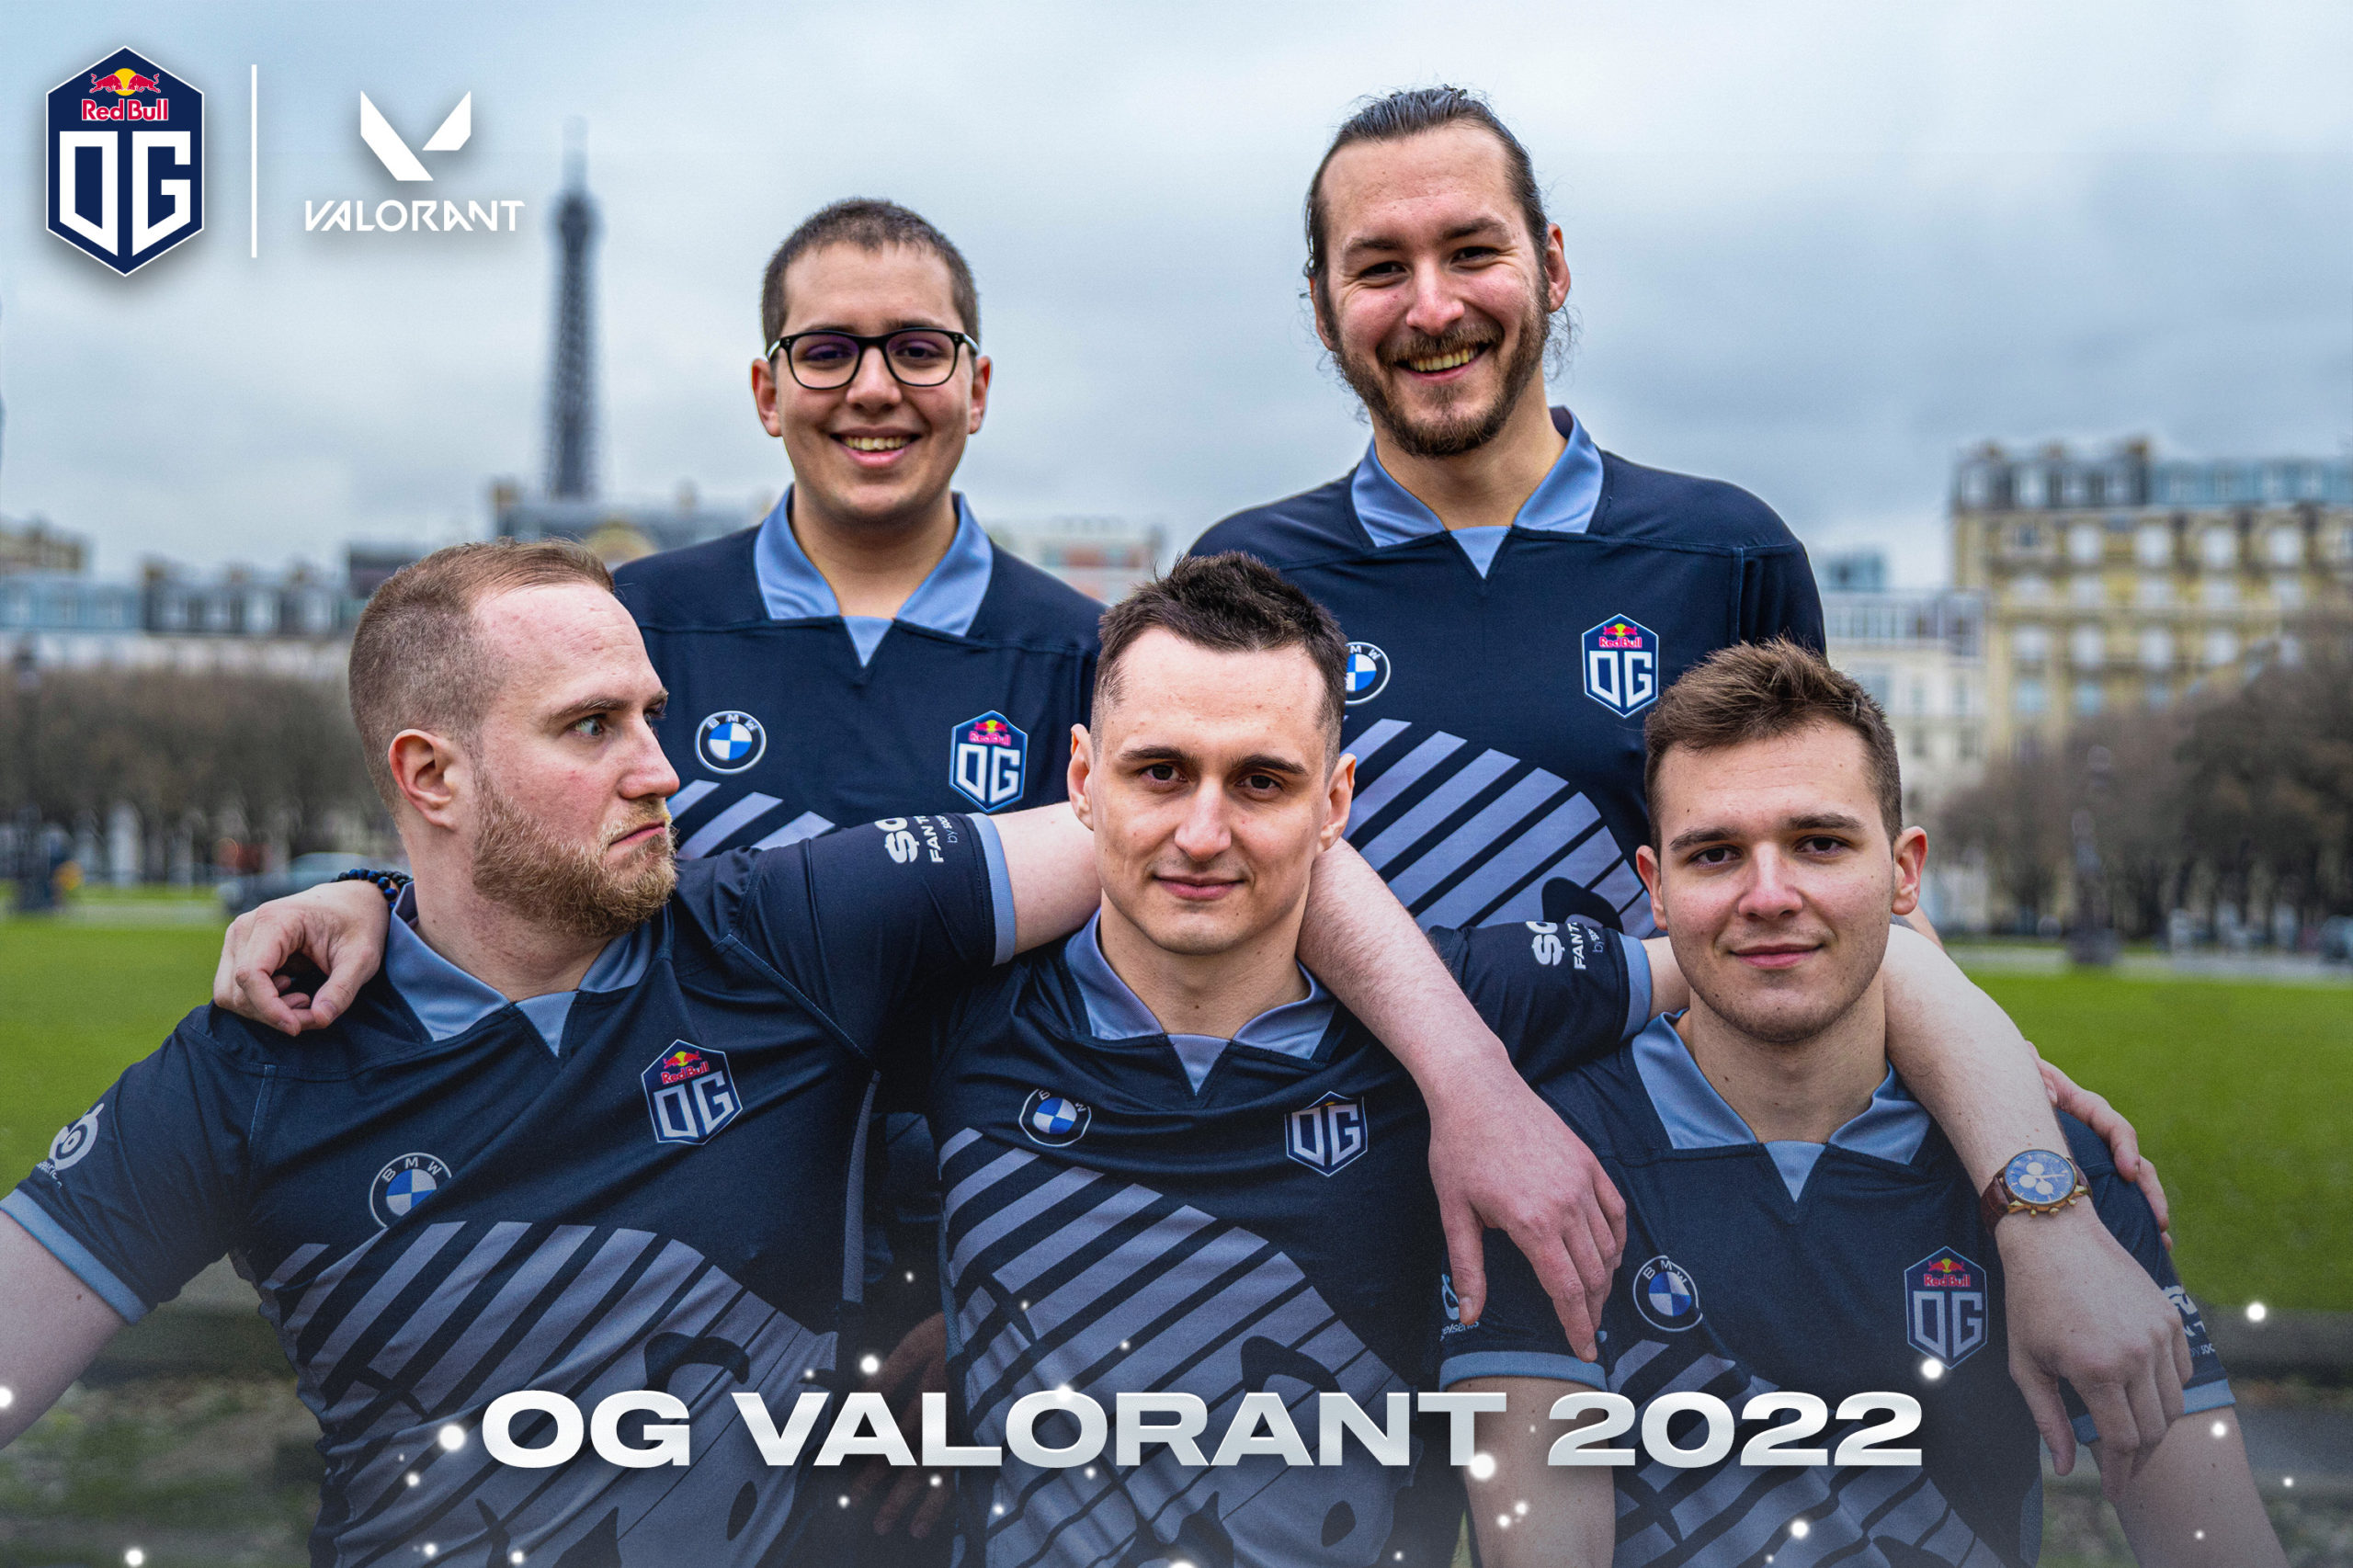 OG zeigt sein Valorant Team für 2022